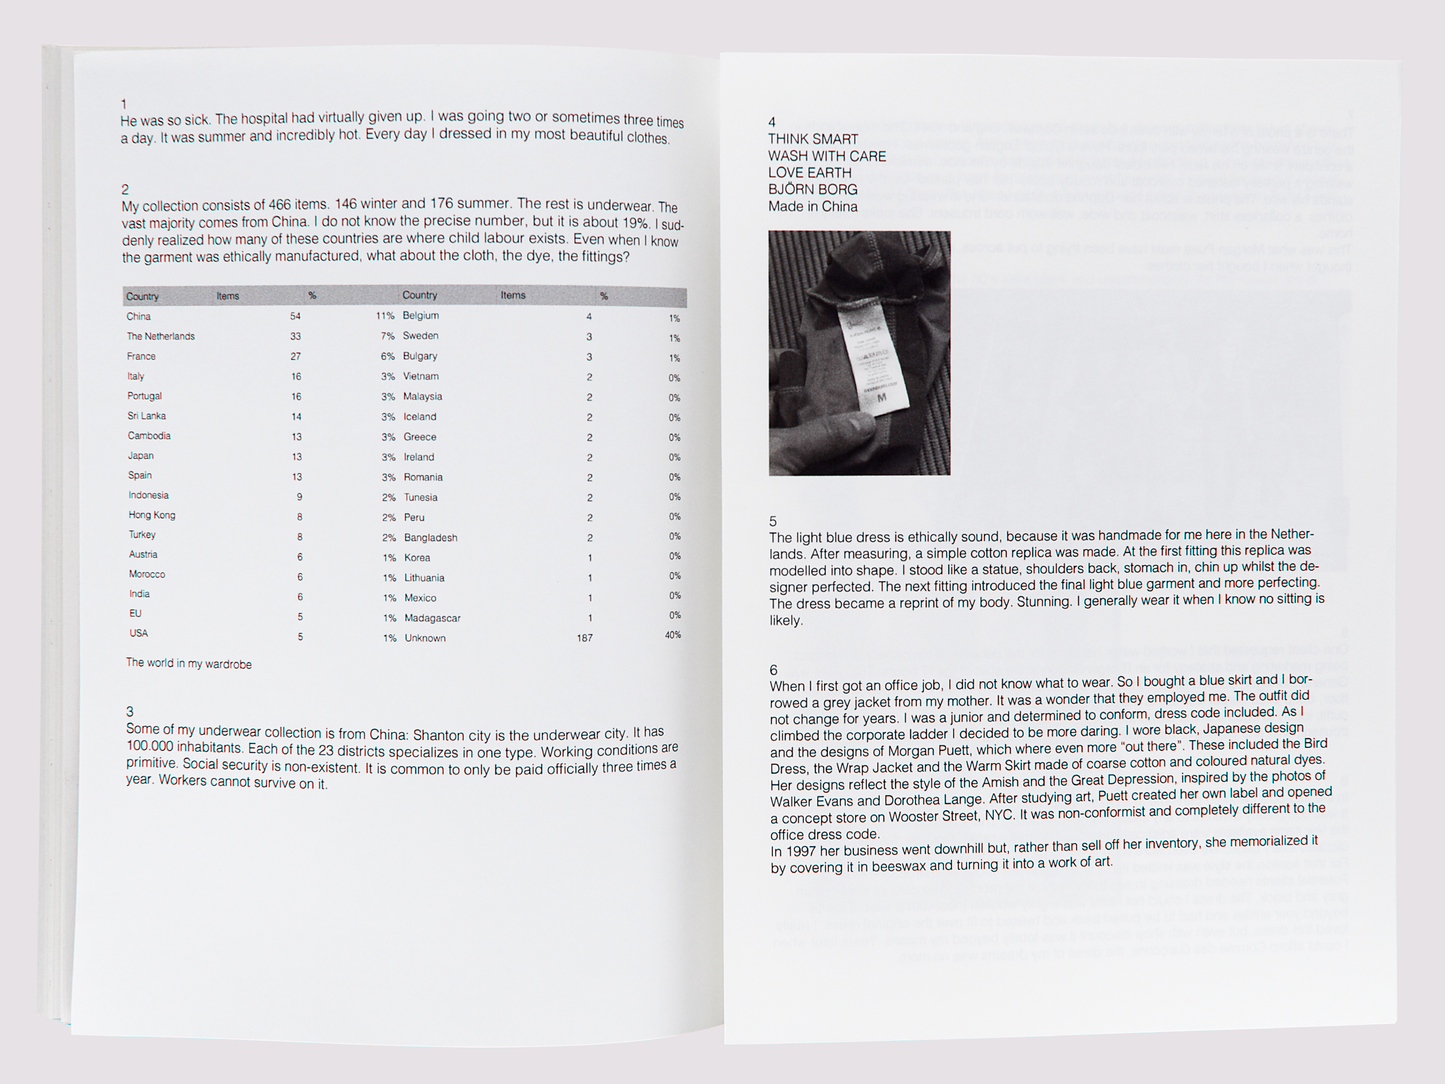 The Complete Collection/Mémé Bartels self-publishing